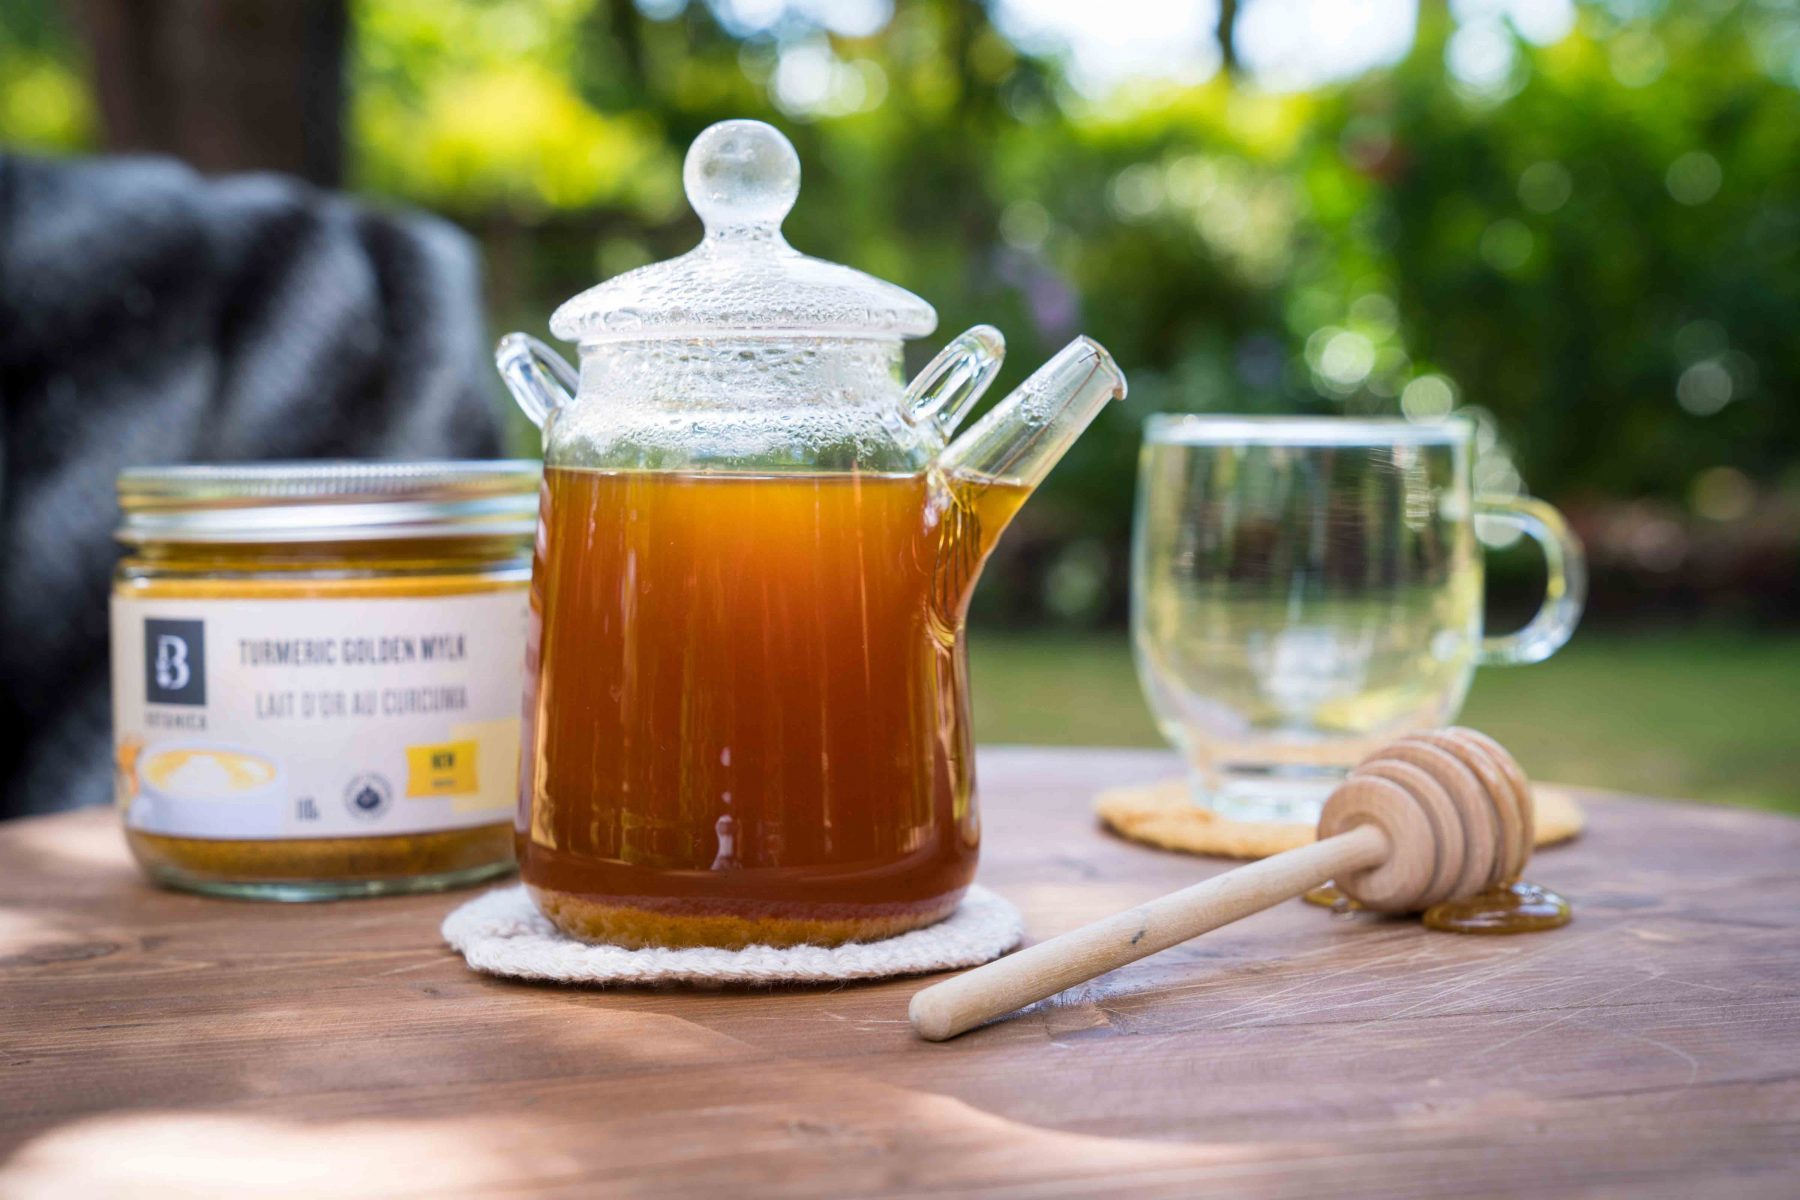 Hot Golden Turmeric Tea with Botanica's Turmeric Golden Mylk